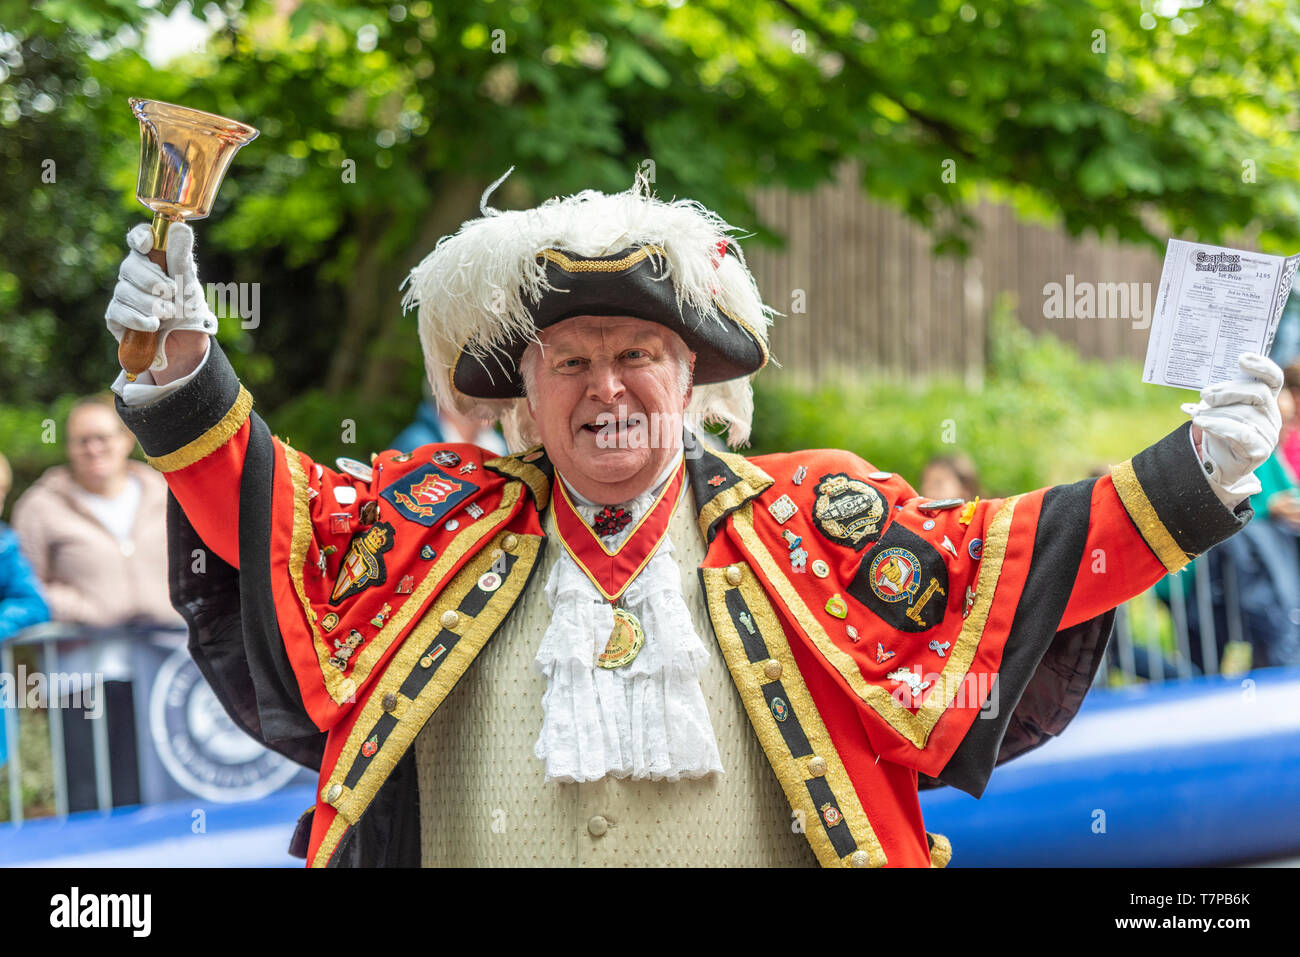 Billericay Town crier Jim Shrubb dans des robes complètes et regalia sonnerie. Tradition britannique traditionnelle Banque D'Images